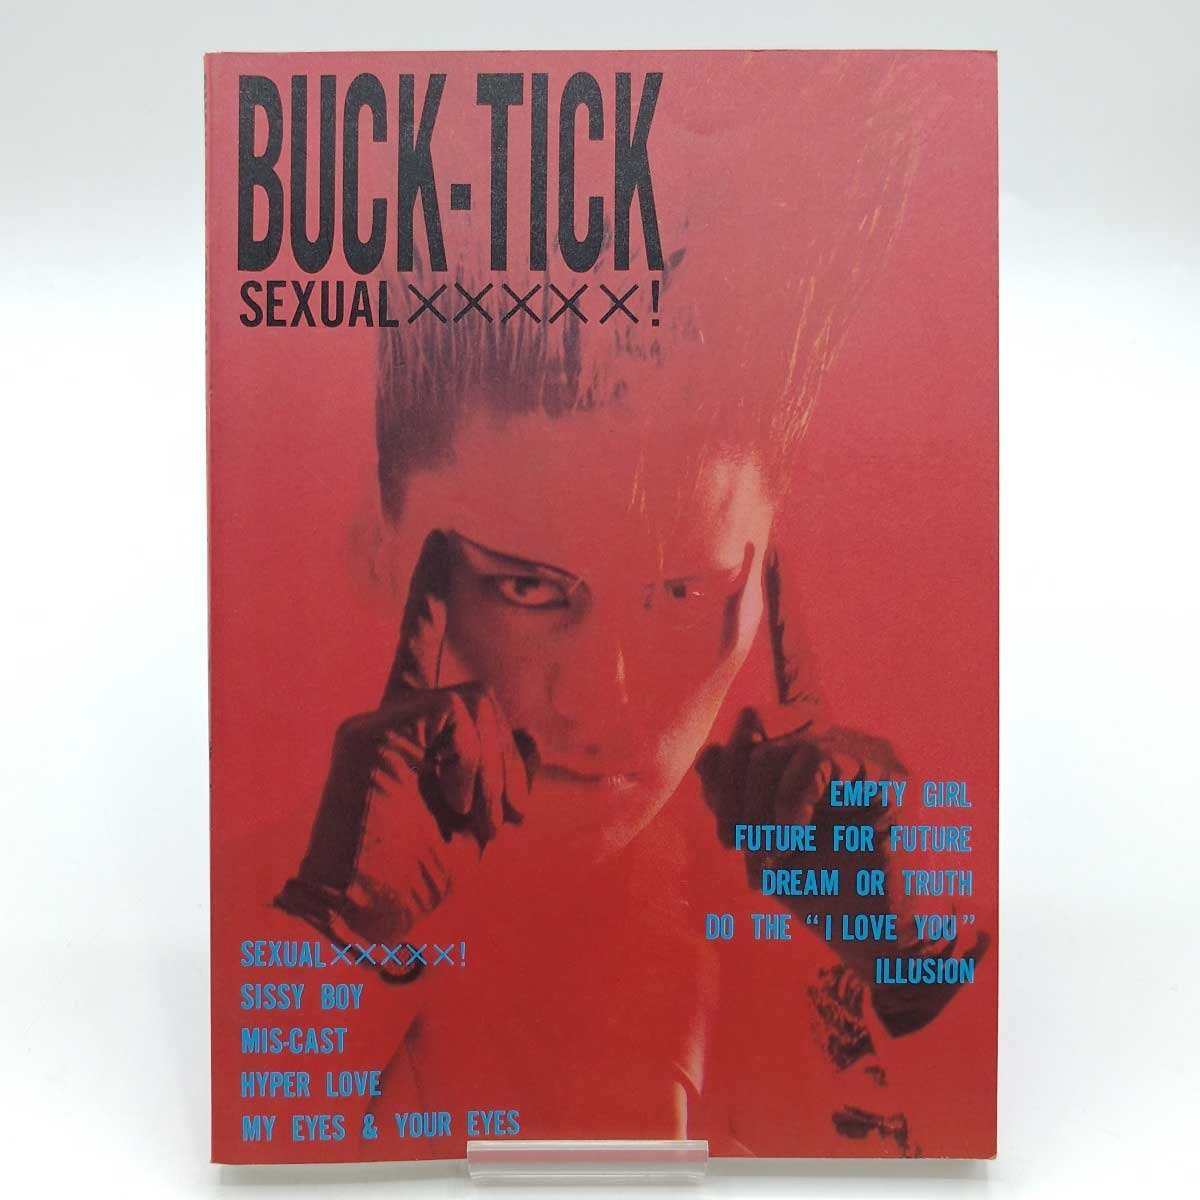 【中古】BUCK-TICK バンドスコア SEXUAL××××× セクシャル 楽譜 バクチク 櫻井敦司_画像1